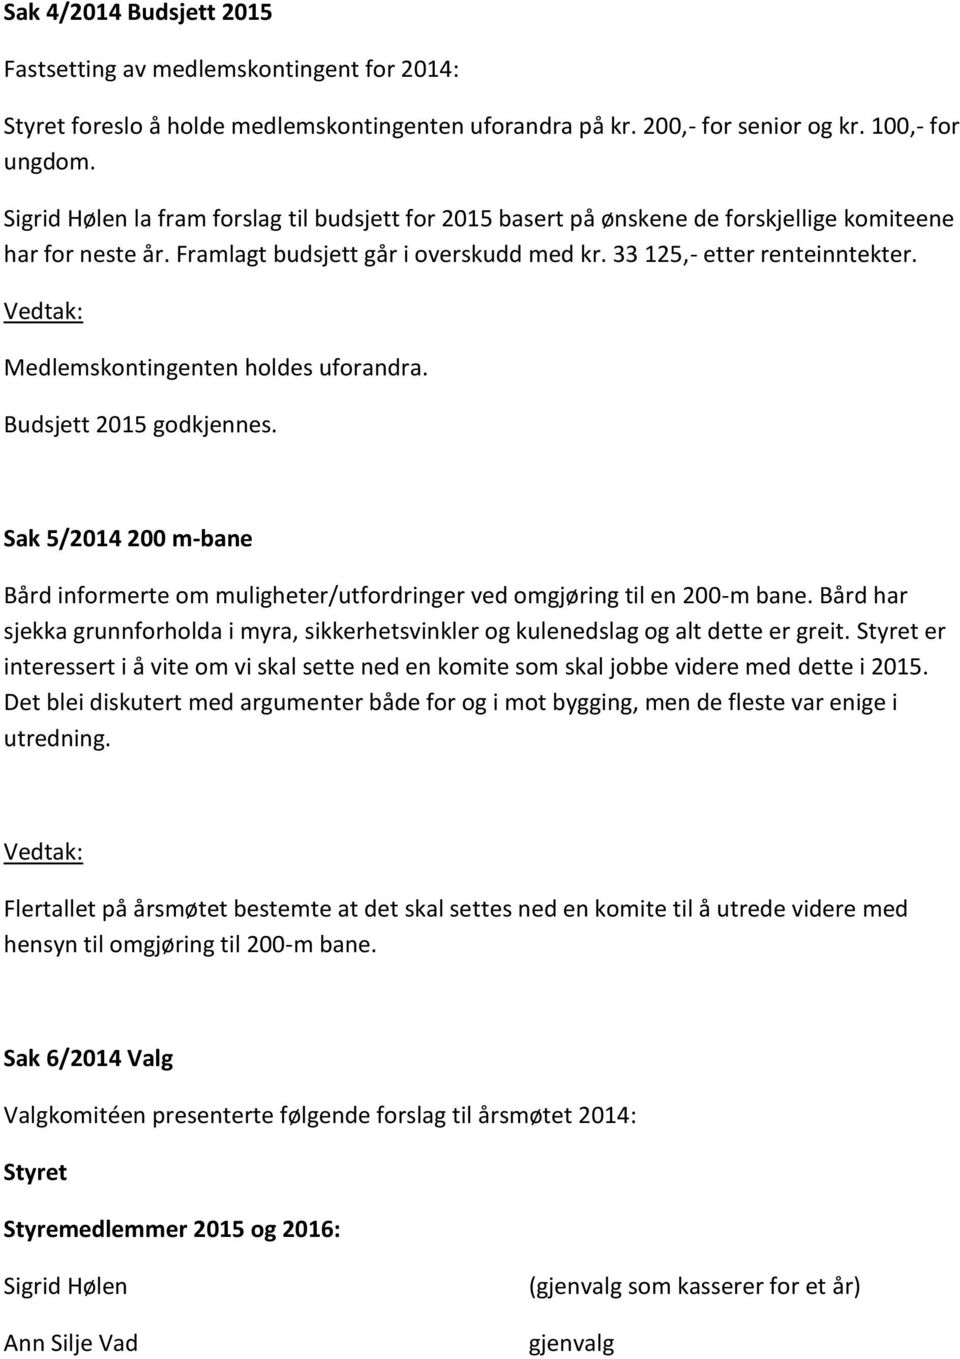 Medlemskntingenten hldes ufrandra. Budsjett 2015 gdkjennes. Sak 5/2014 200 m-bane Bård infrmerte m muligheter/utfrdringer ved mgjøring til en 200-m bane.